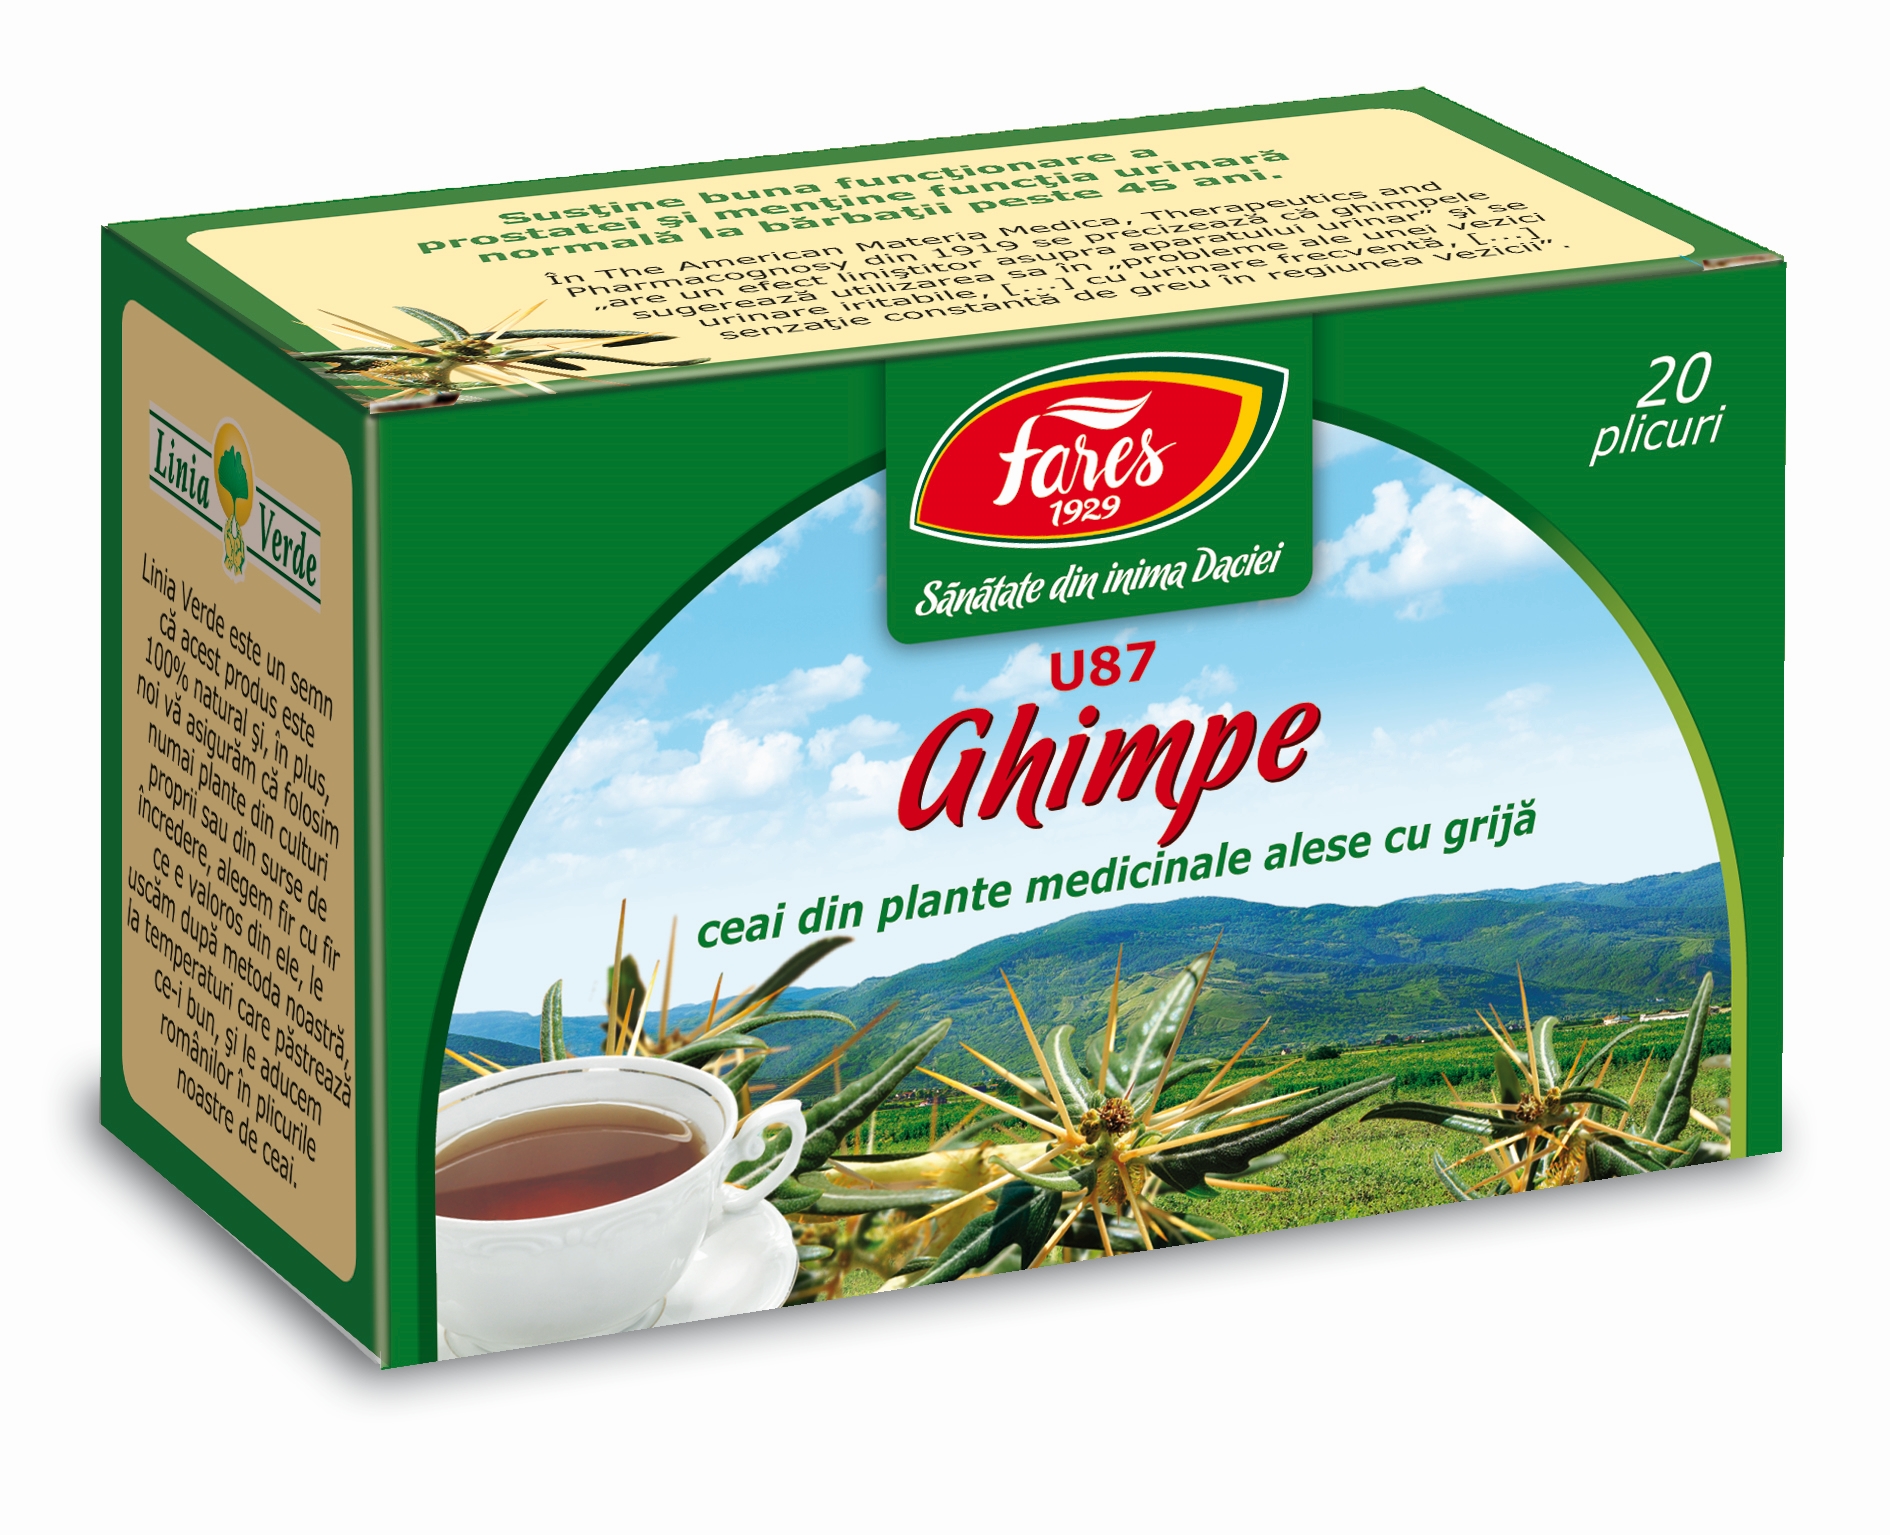 Ceaiuri - Ceai ghimpe dz Fares, farmacieieftina.ro